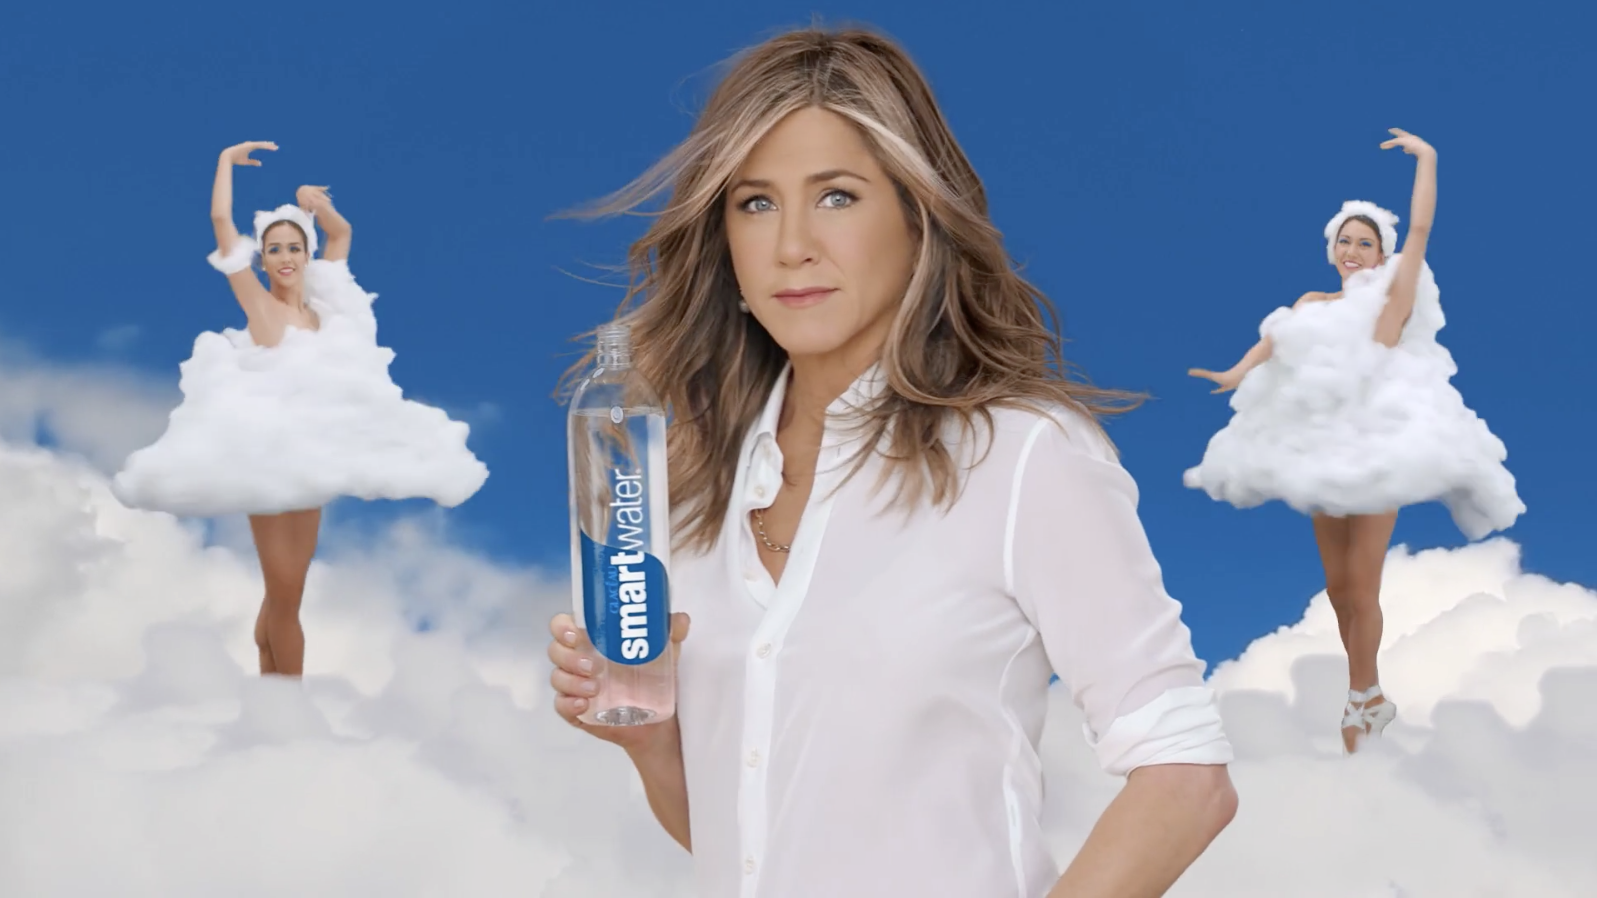 Девушка из рекламы озон. Женский образ в рекламе. Реклама воды.